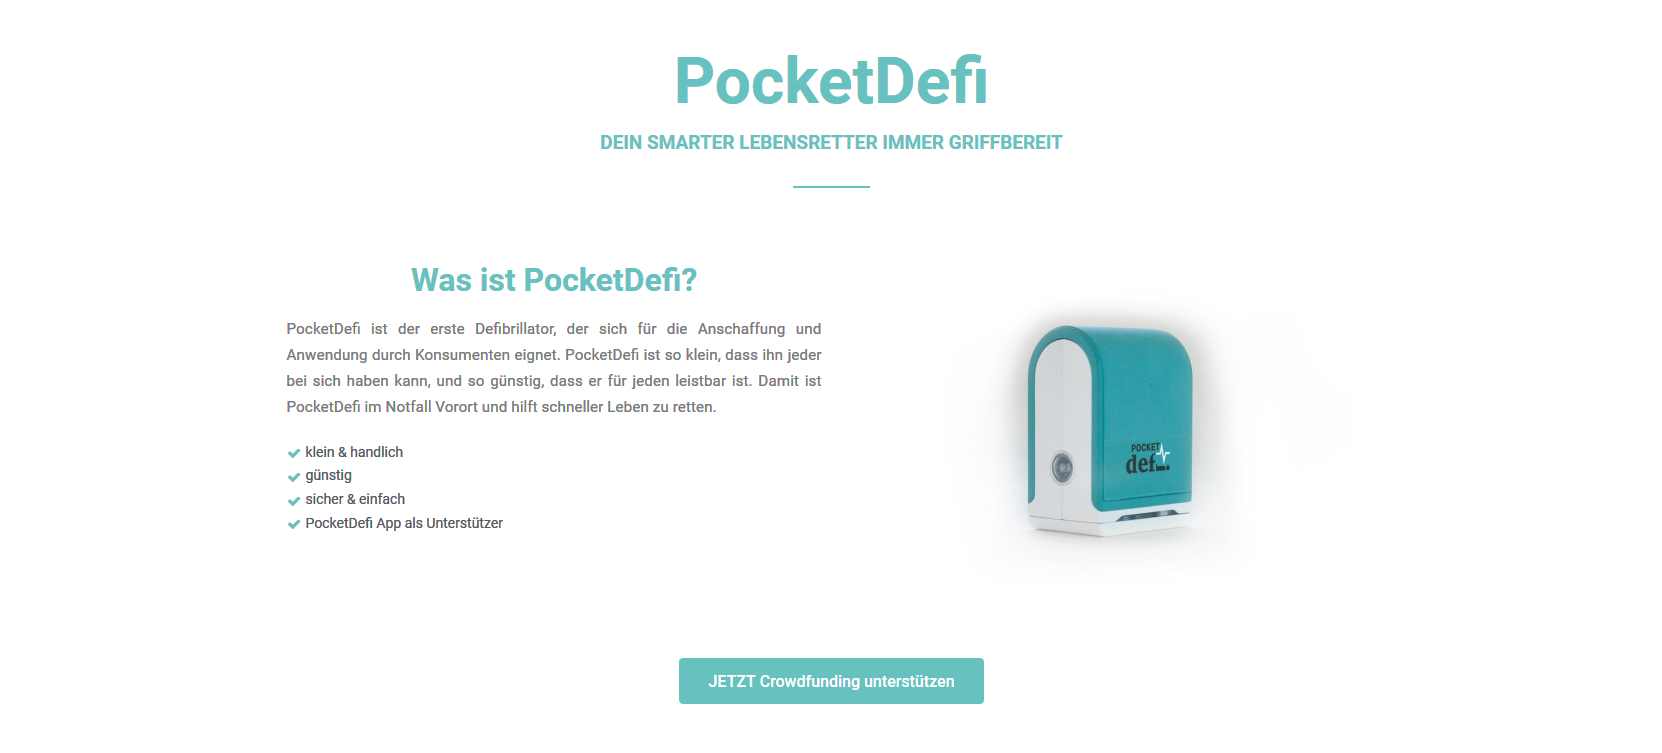 PocketDefi - Product